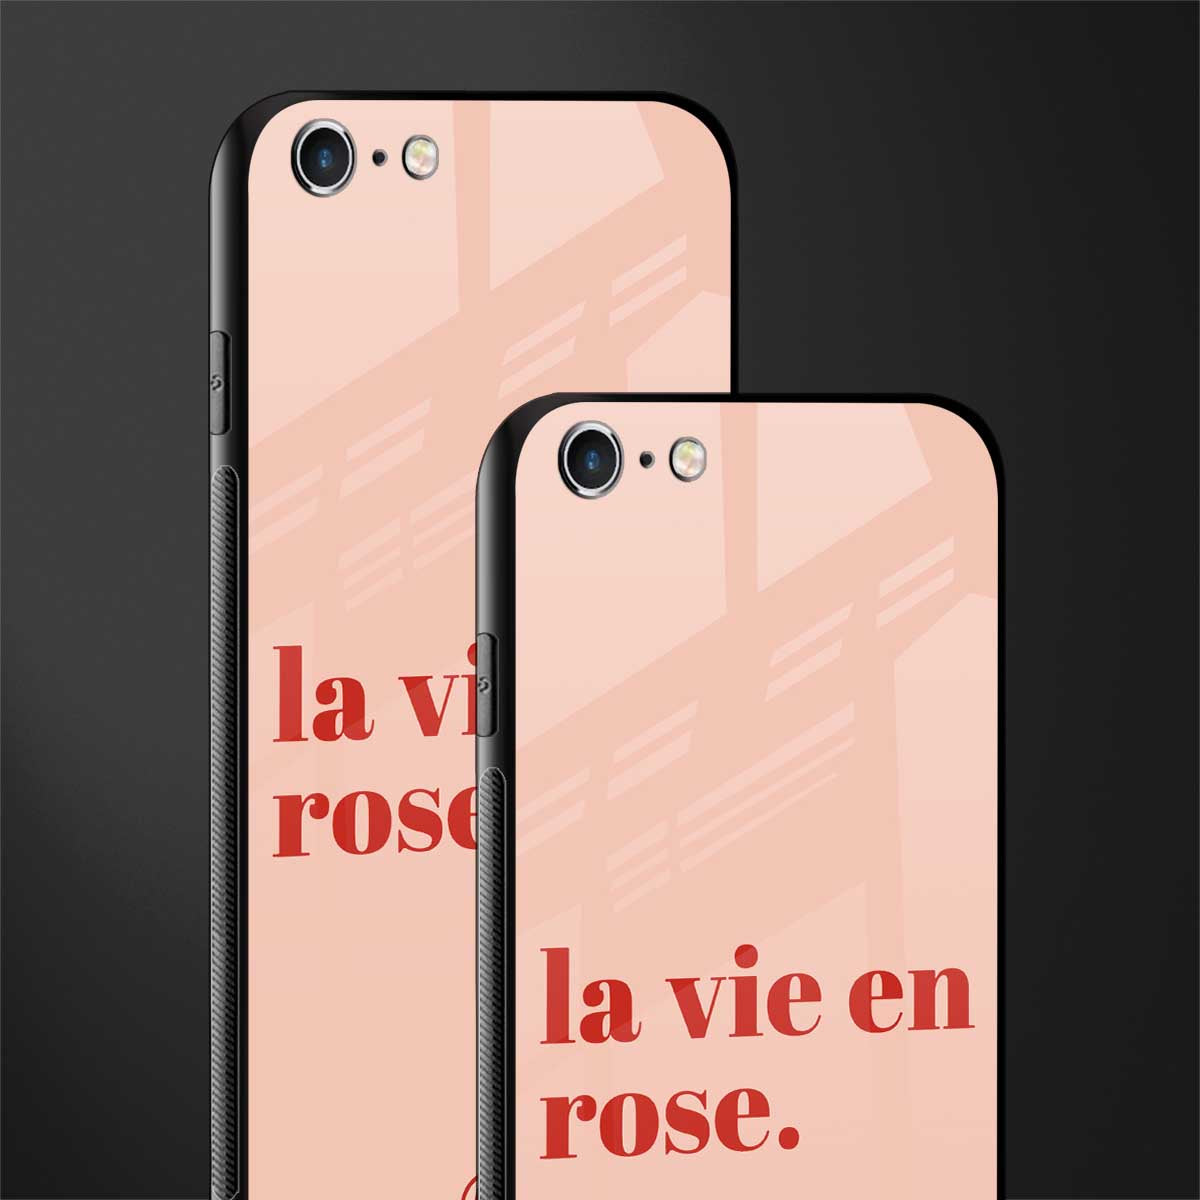 la vie en rose quote glass case for iphone 6 image-2